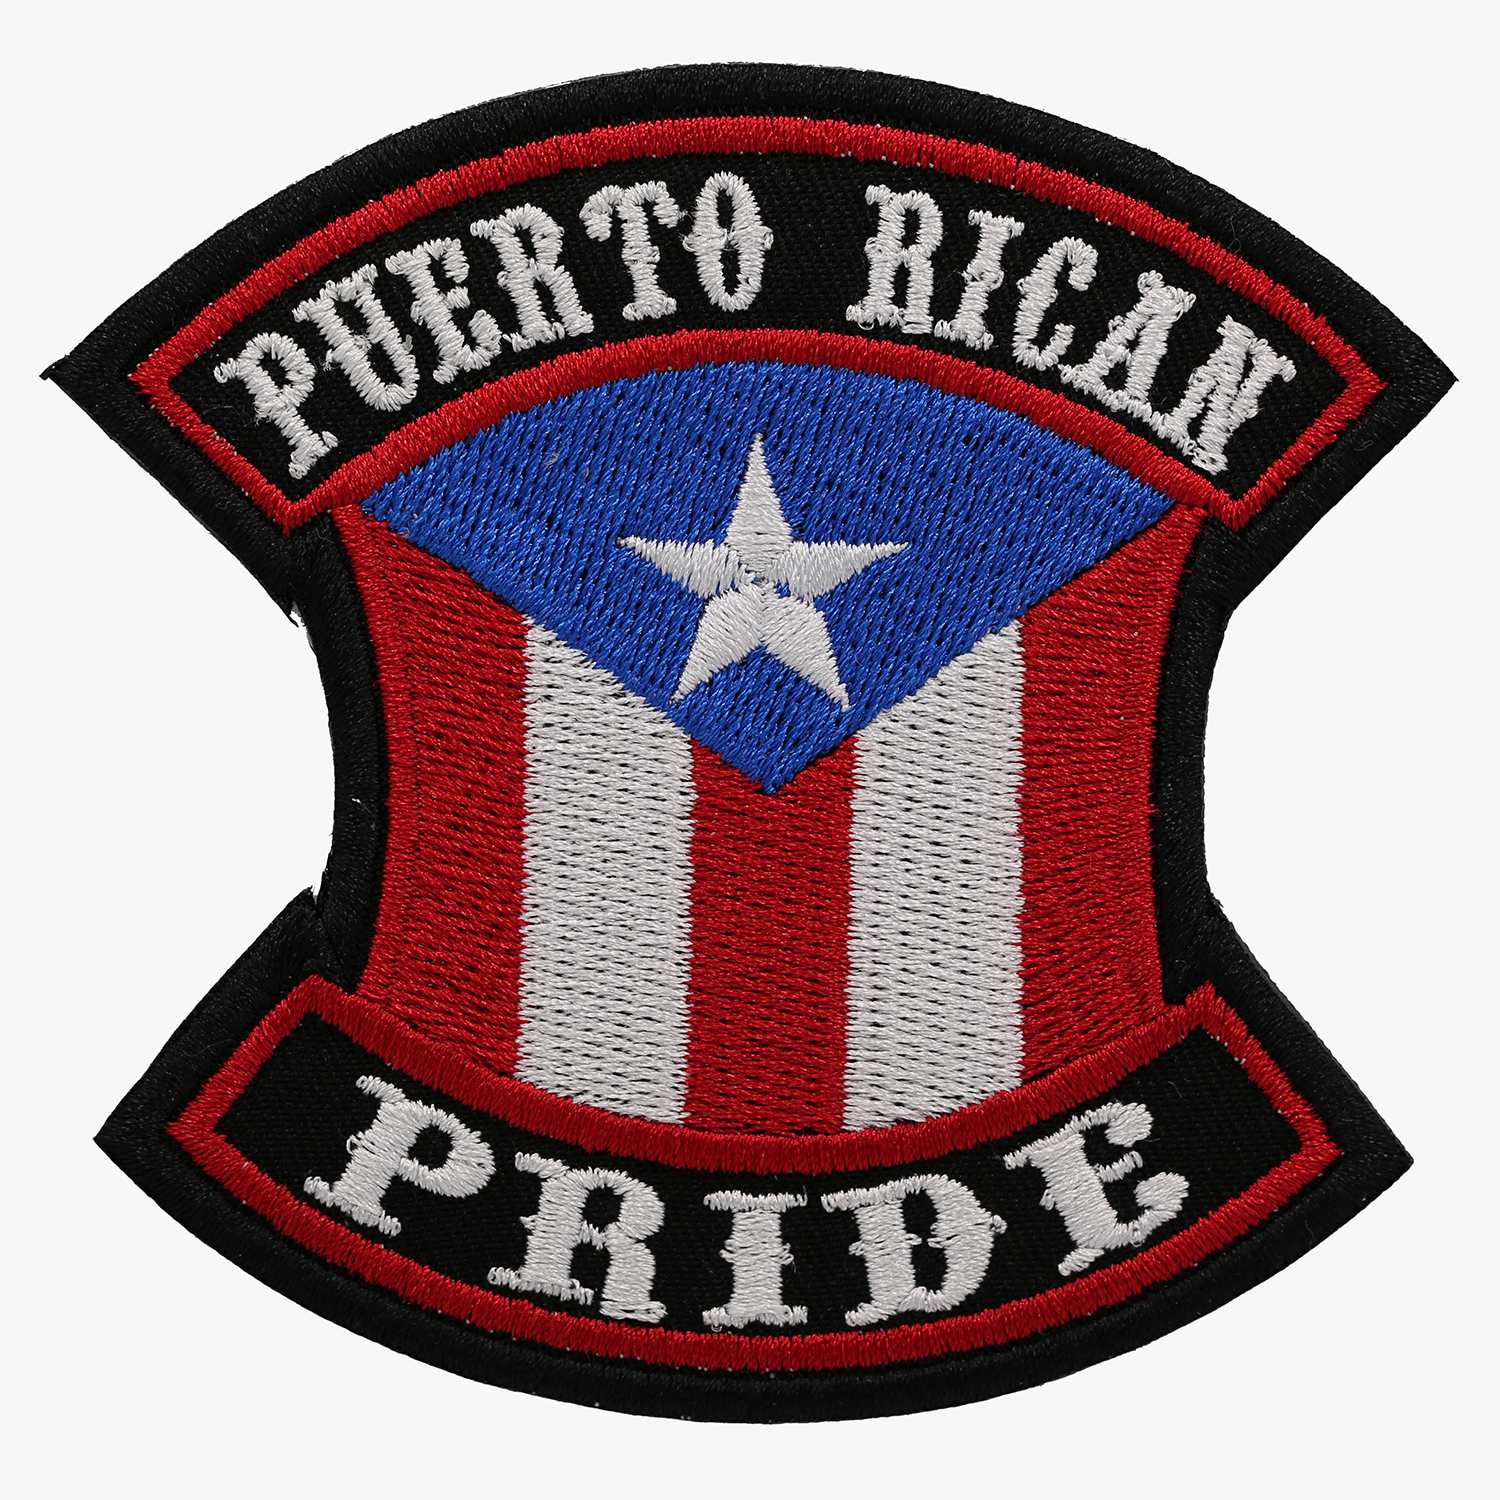 PUERTO RICAN PRIDE